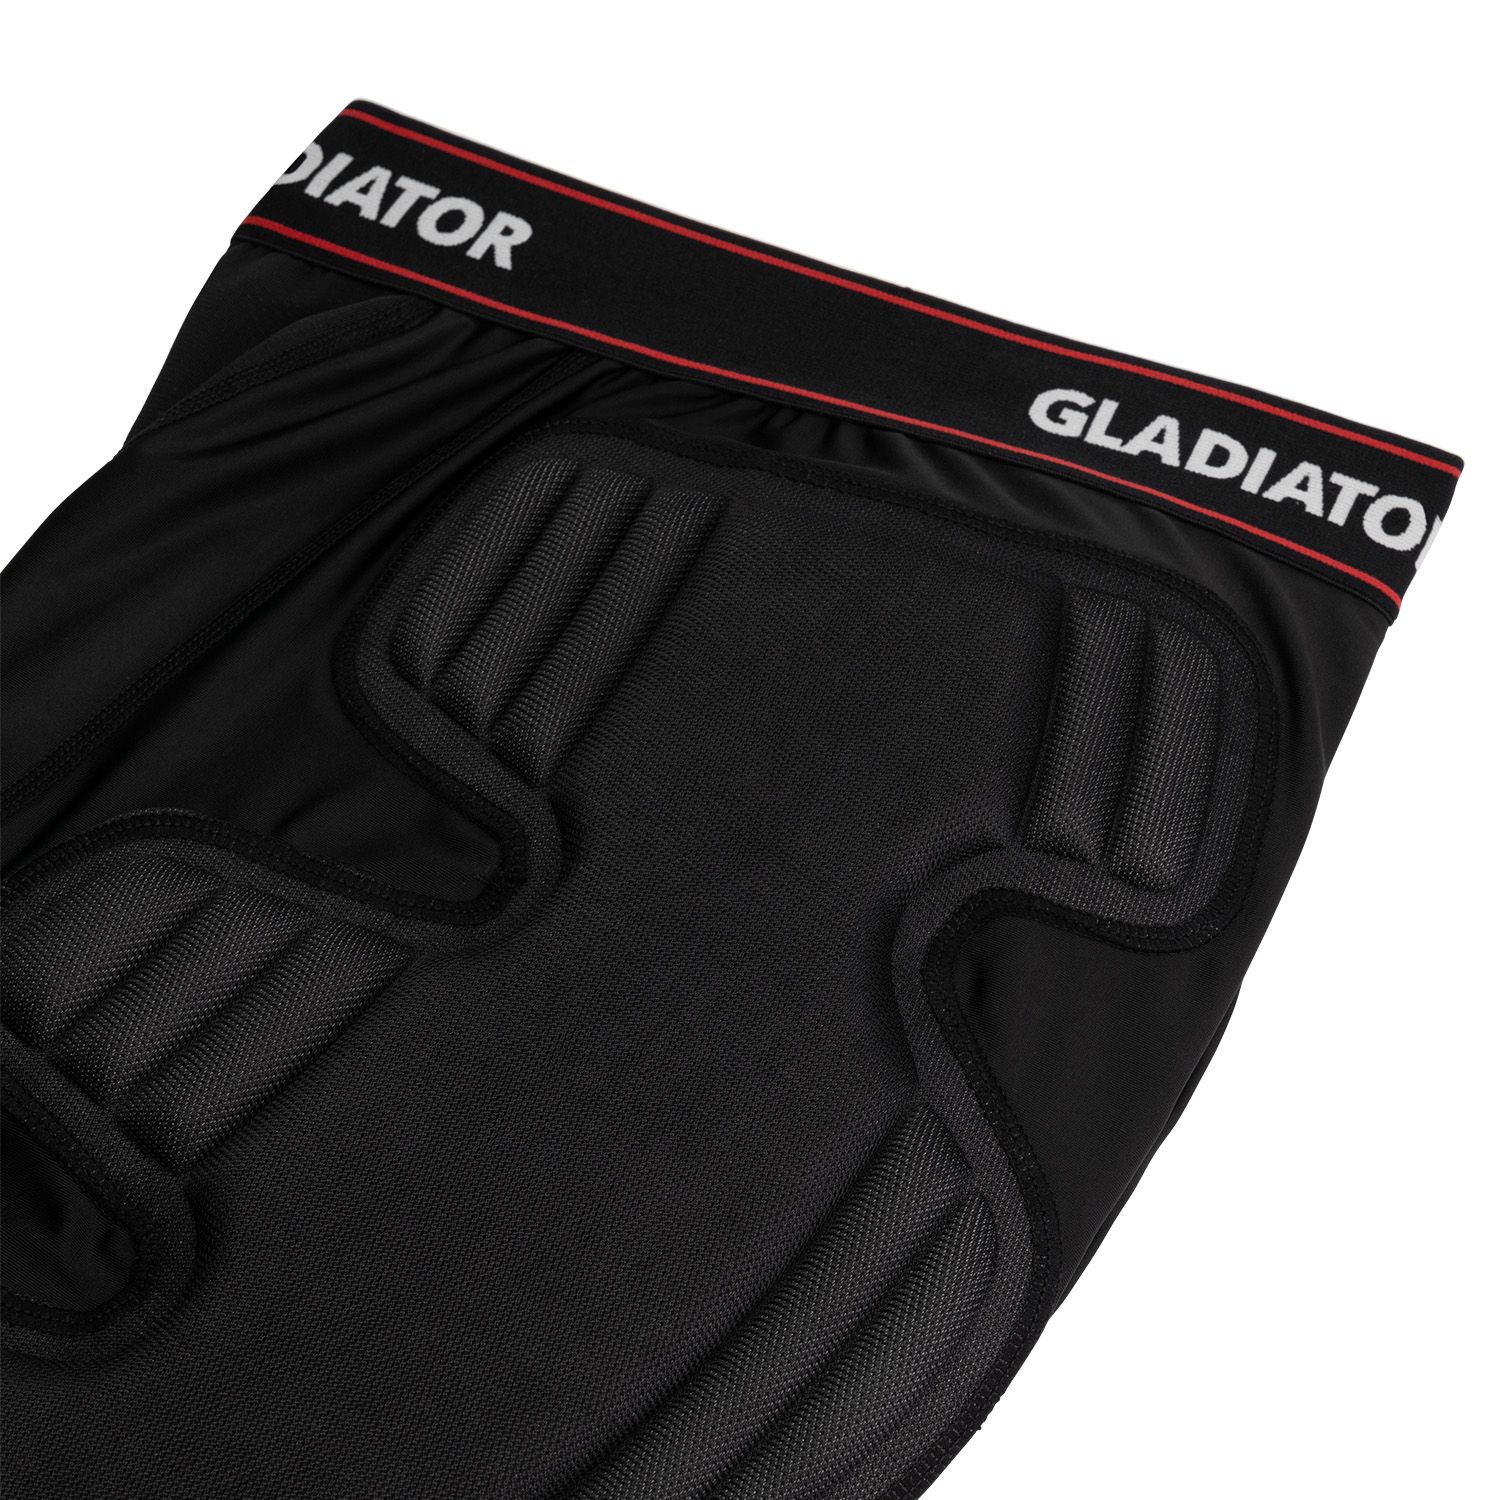 gladiator goalkeeper protection shorts zoom